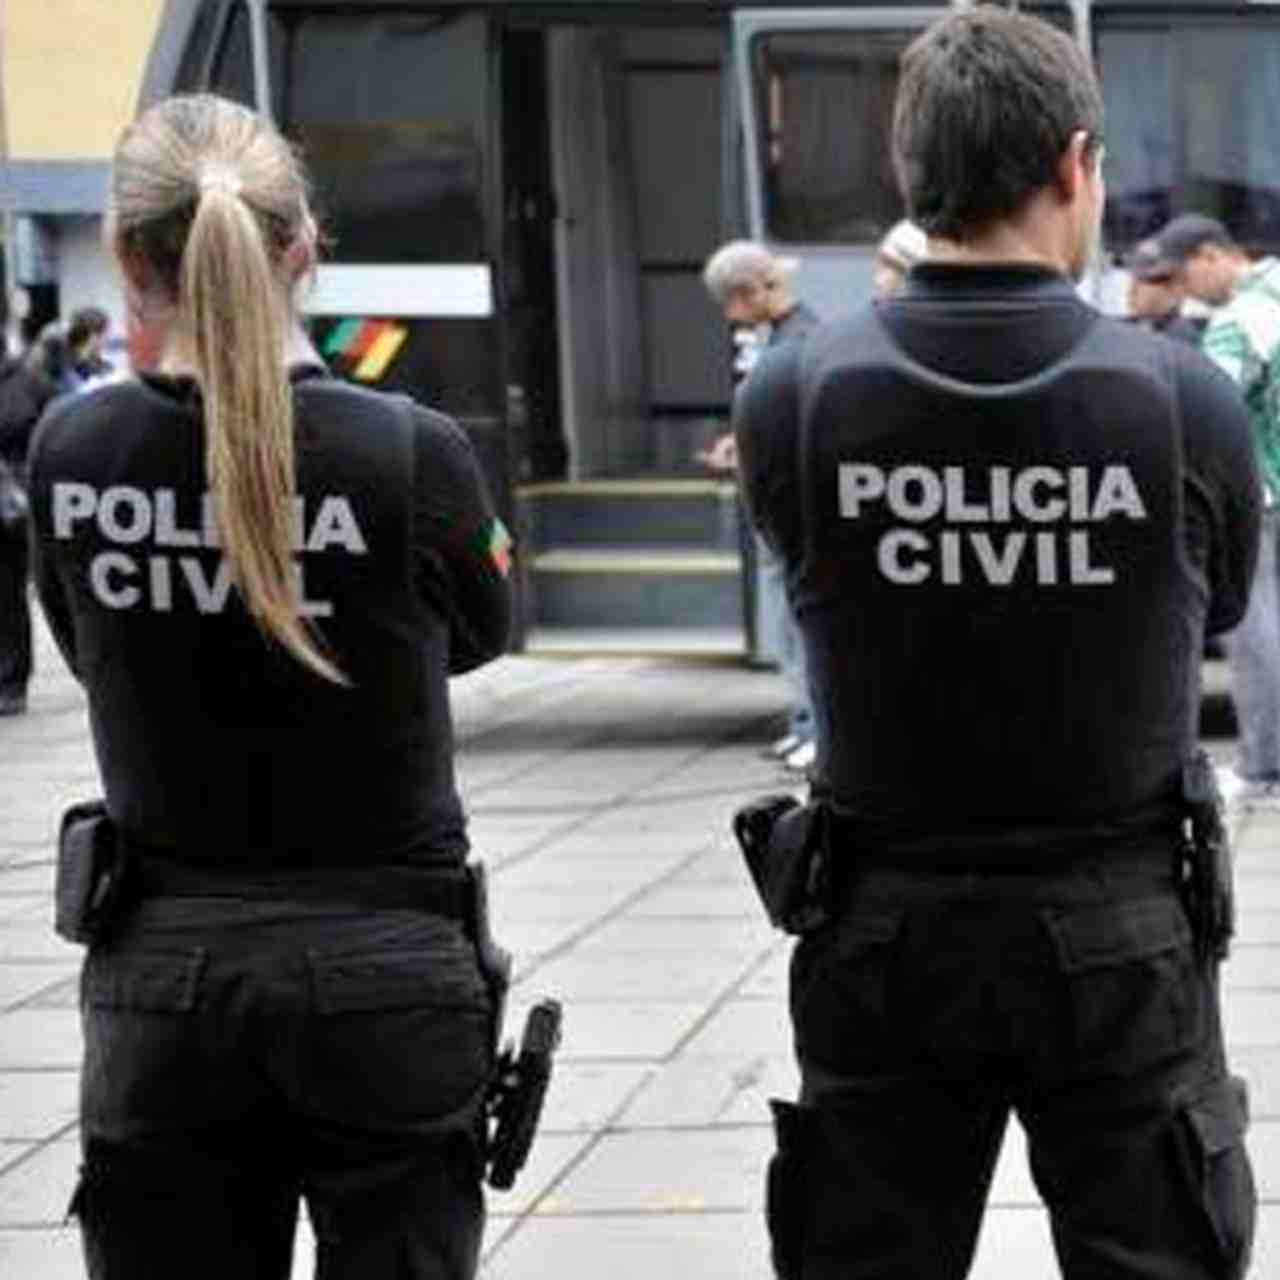 Concurso Polícia Penal ES - Edital em Maio! - Blog Monster Concursos - %